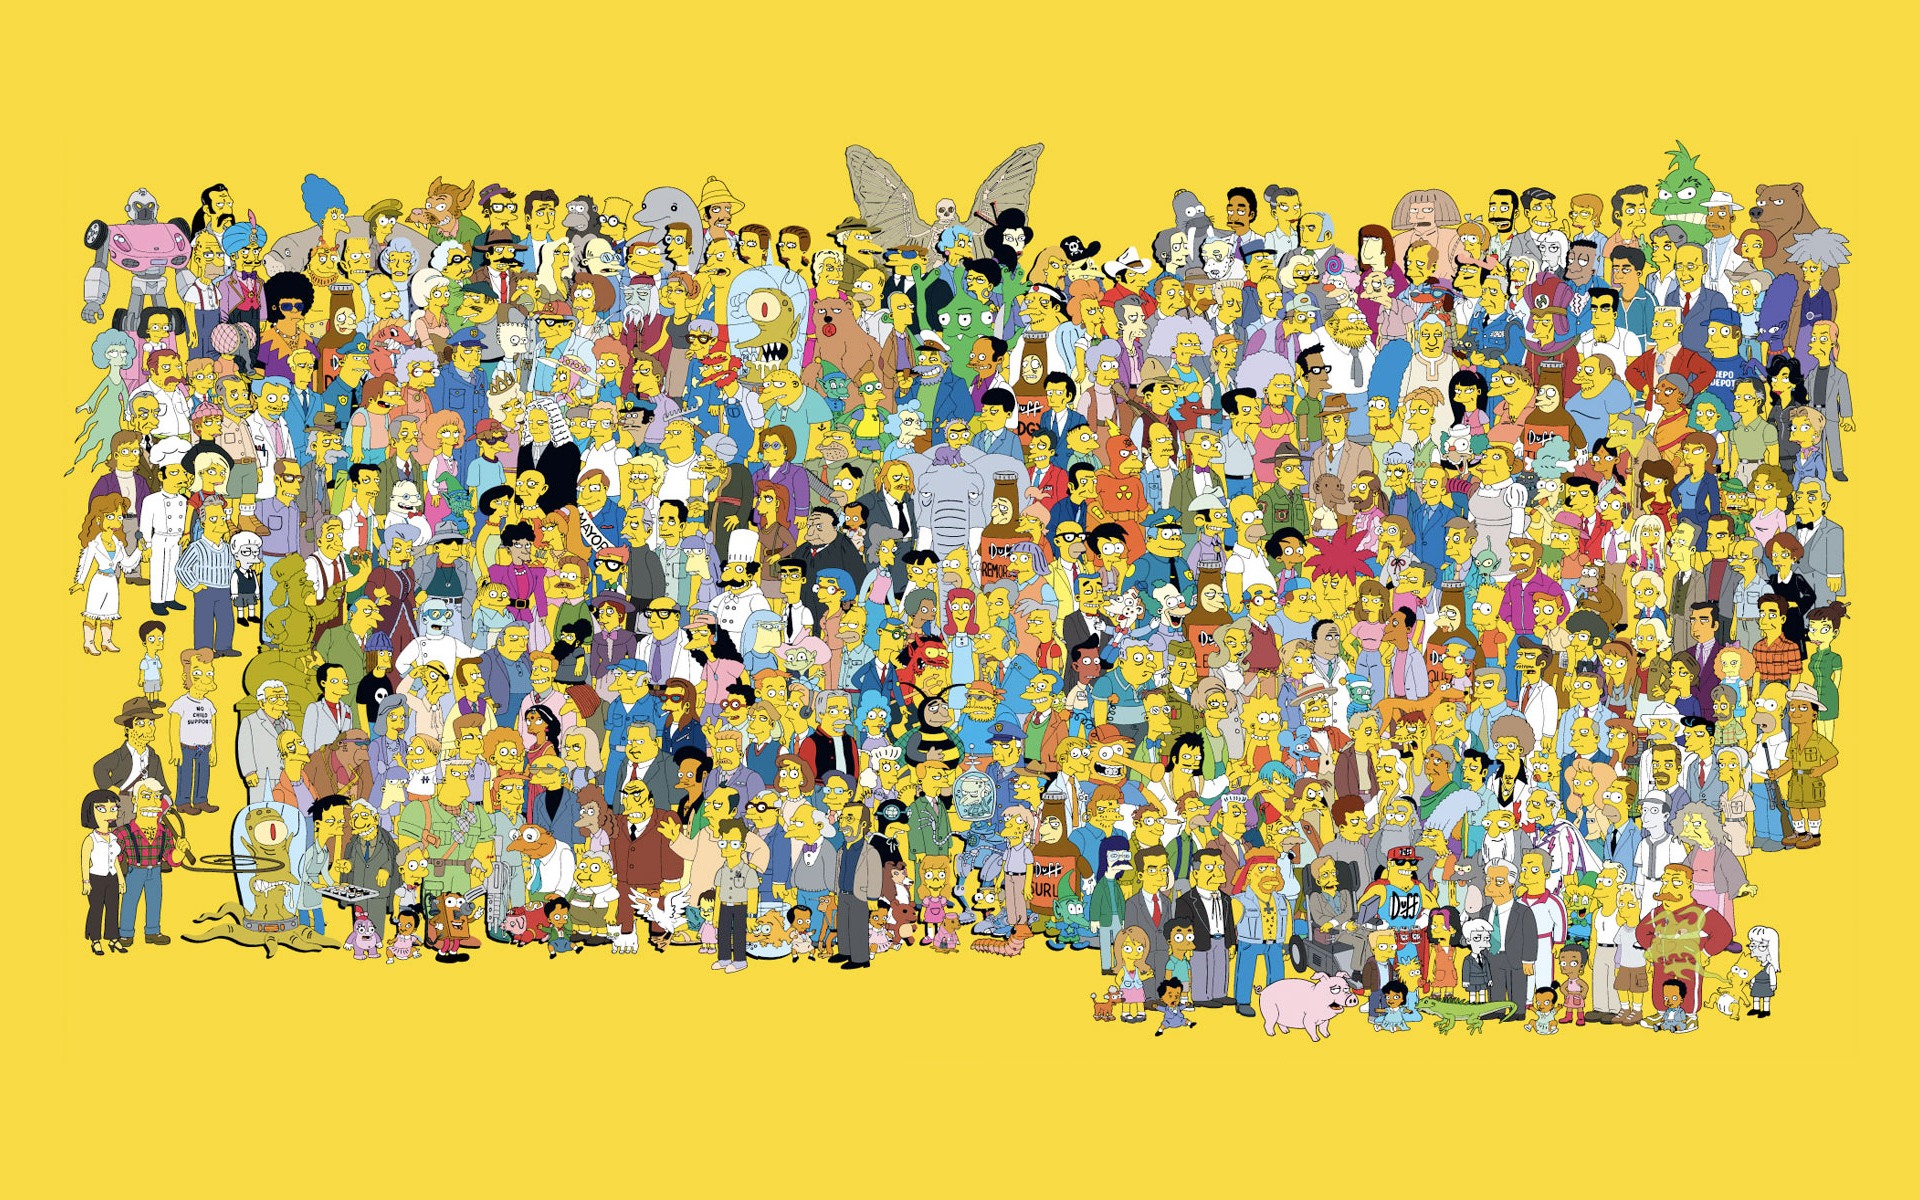 77 Simpsons Characters Wallpaper On Wallpapersafari